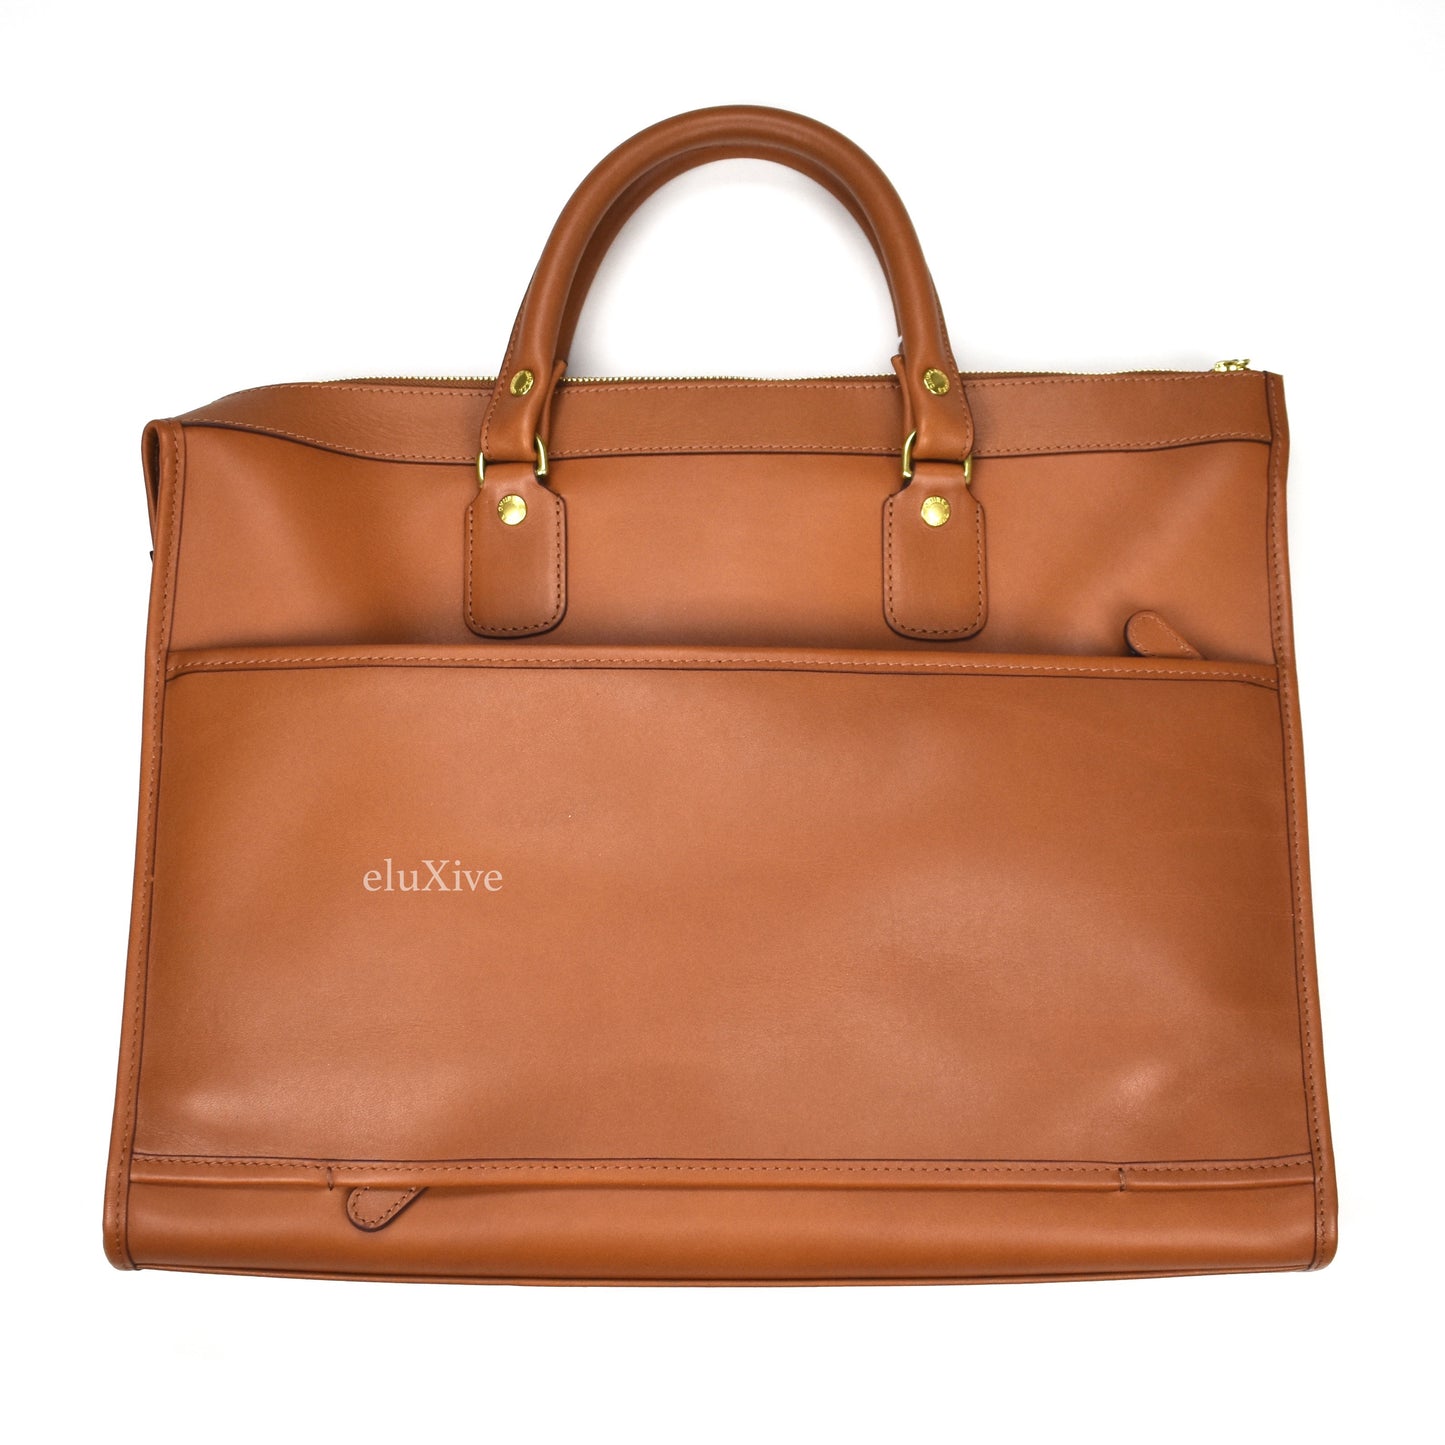 Ghurka - Leather Vestry No. 152 Bag (Chestnut)